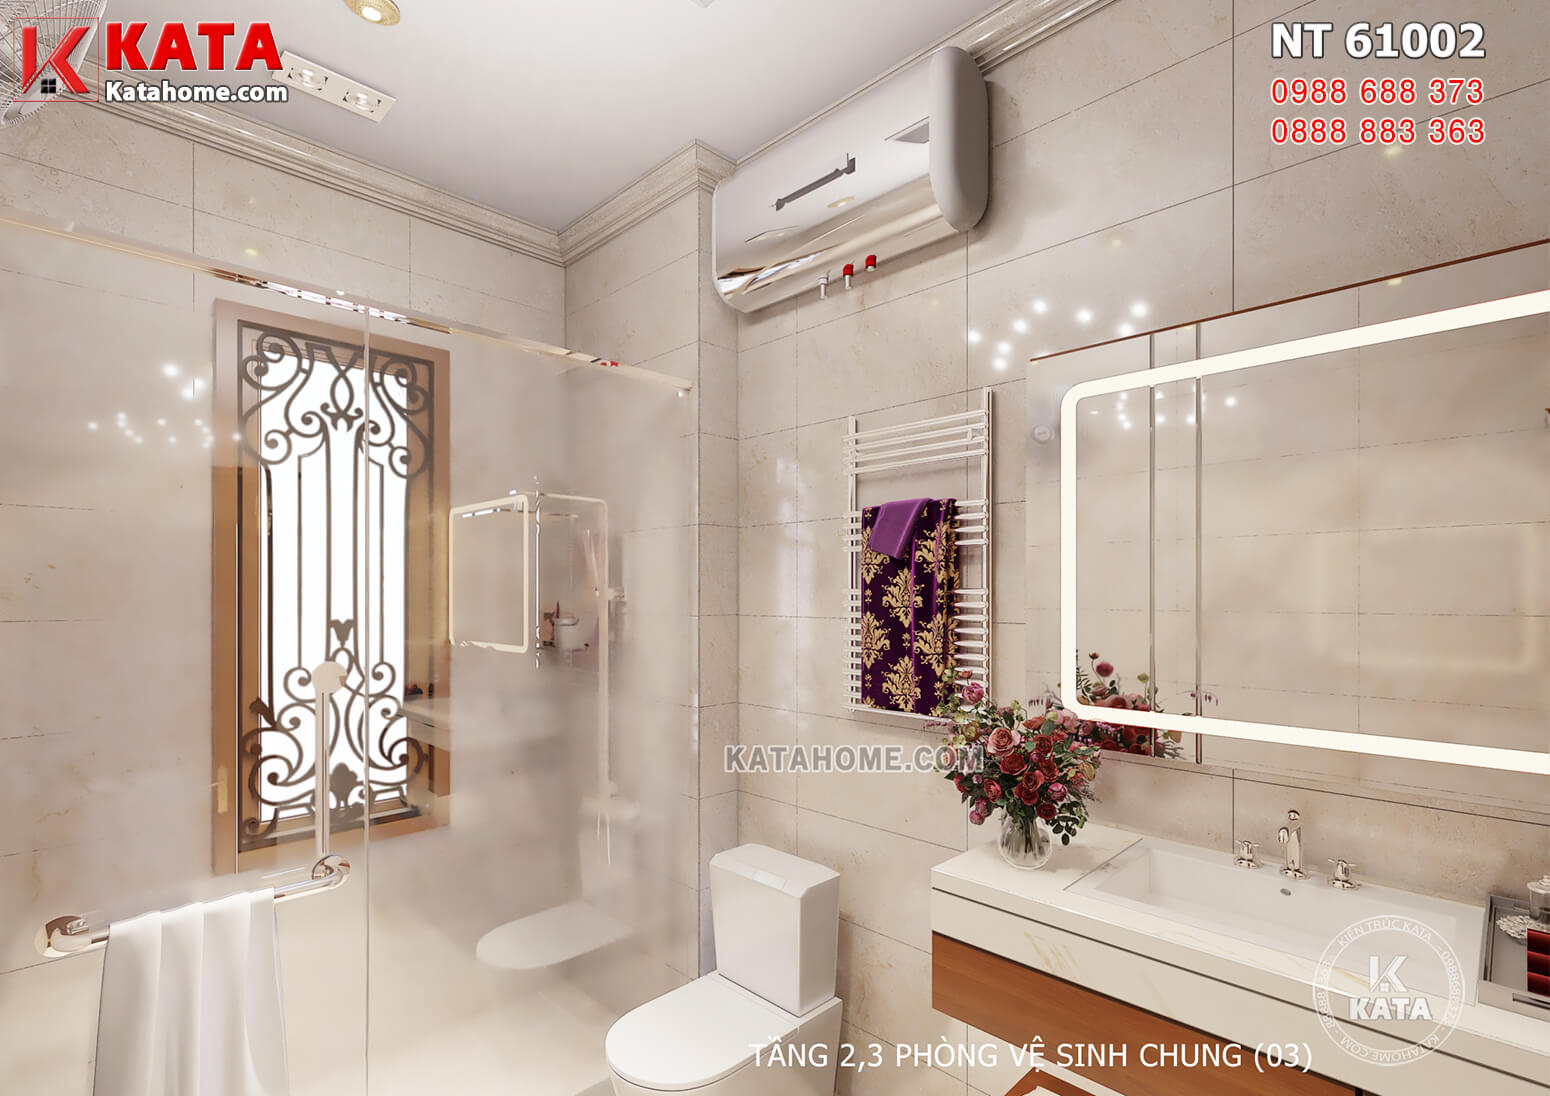 Hình ảnh: Thiết kế nội thất tân cổ điển đẹp cho không gian nhà vệ sinh